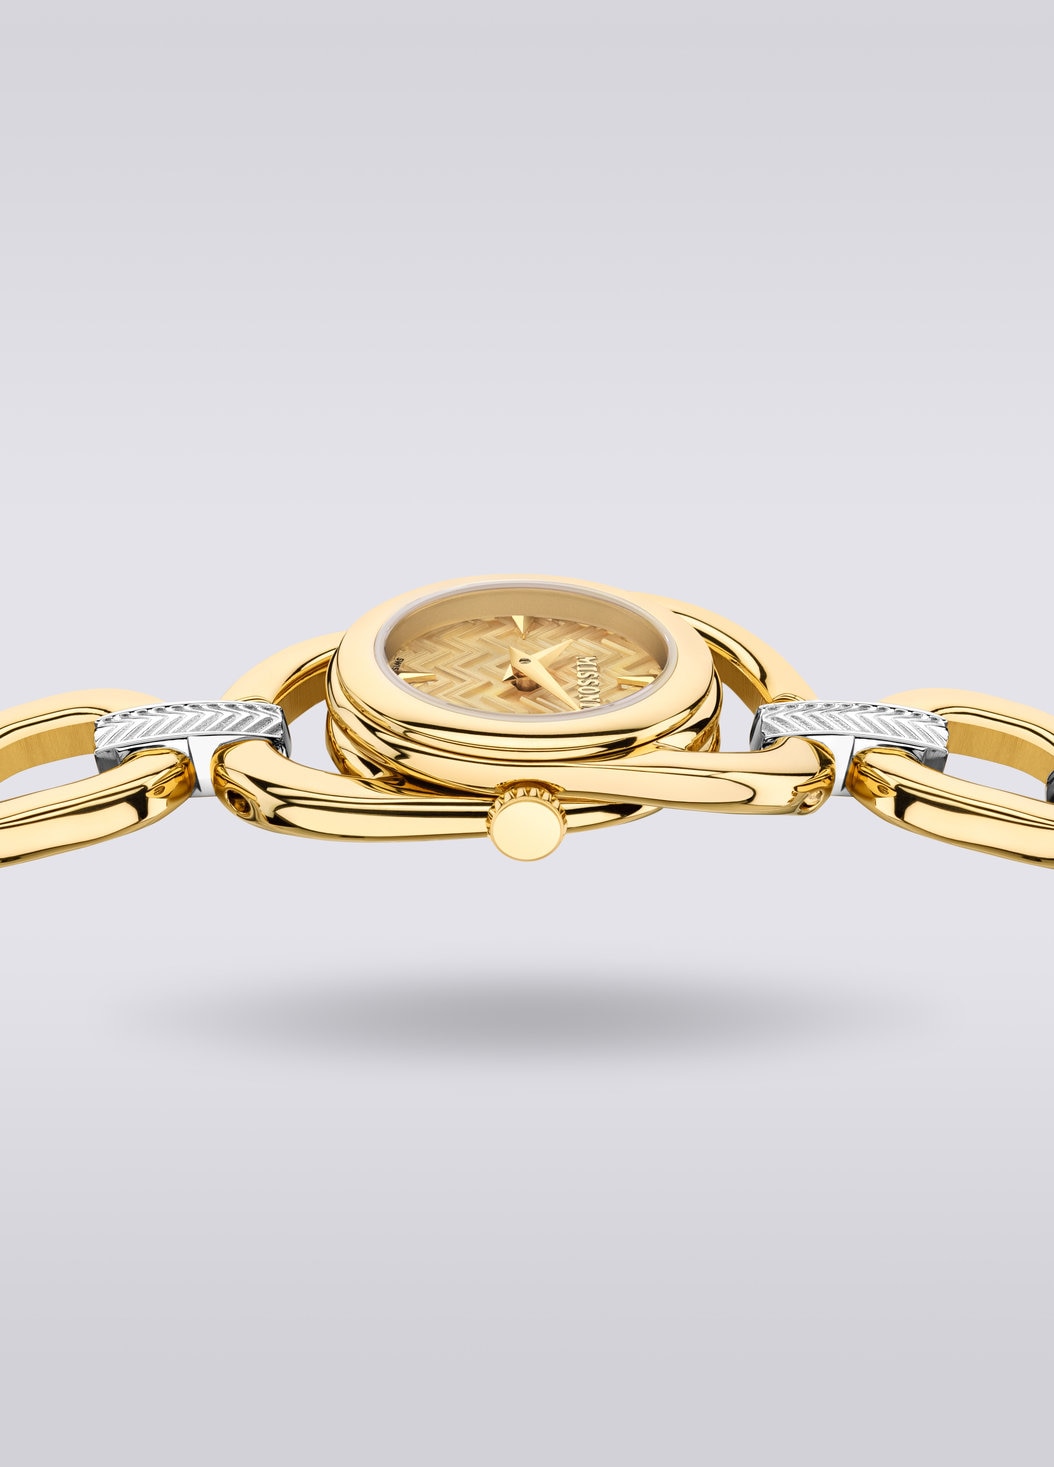 Missoni Gioiello Chain, Uhr mit 22,8 MM Gehäusegröße, Mehrfarbig  - 8053147046198 - 3